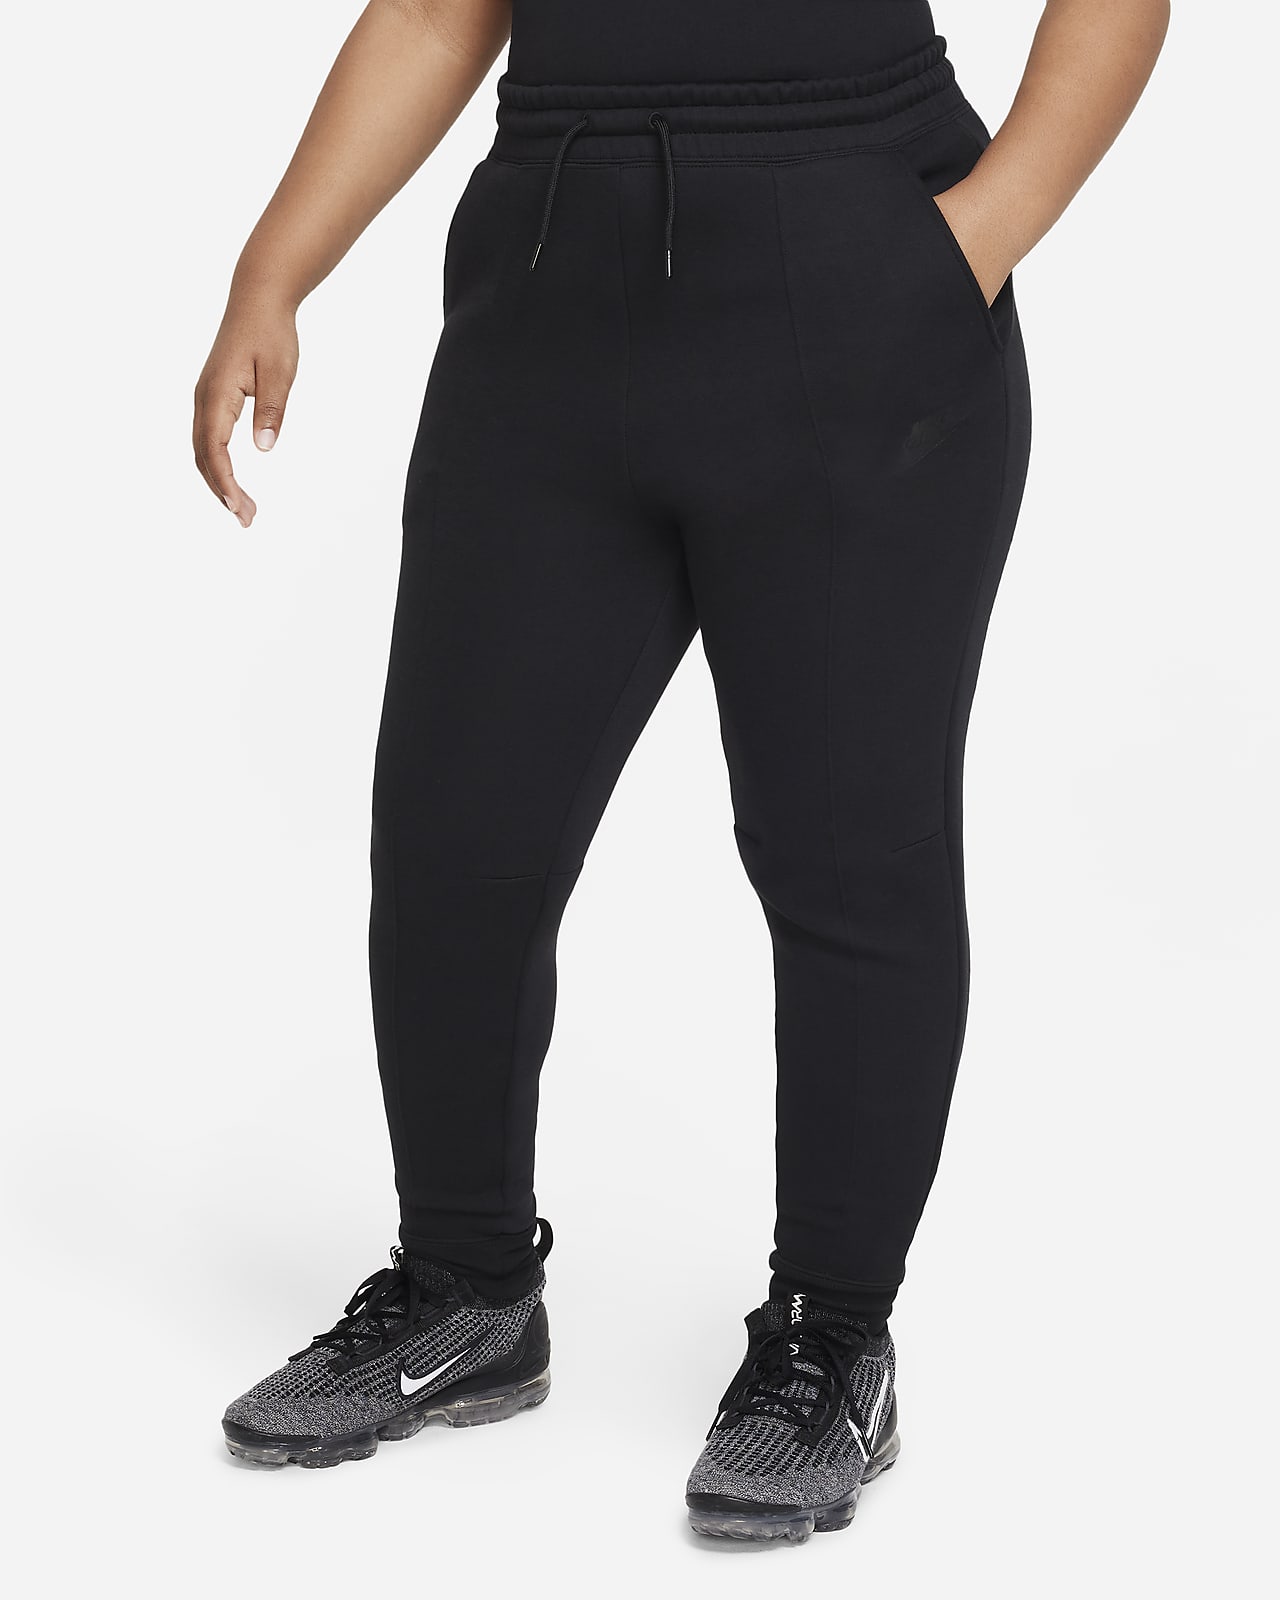 Nike Sportswear Tech Fleece szabadidőnadrág nagyobb gyerekeknek (lányok) (hosszabb méret)